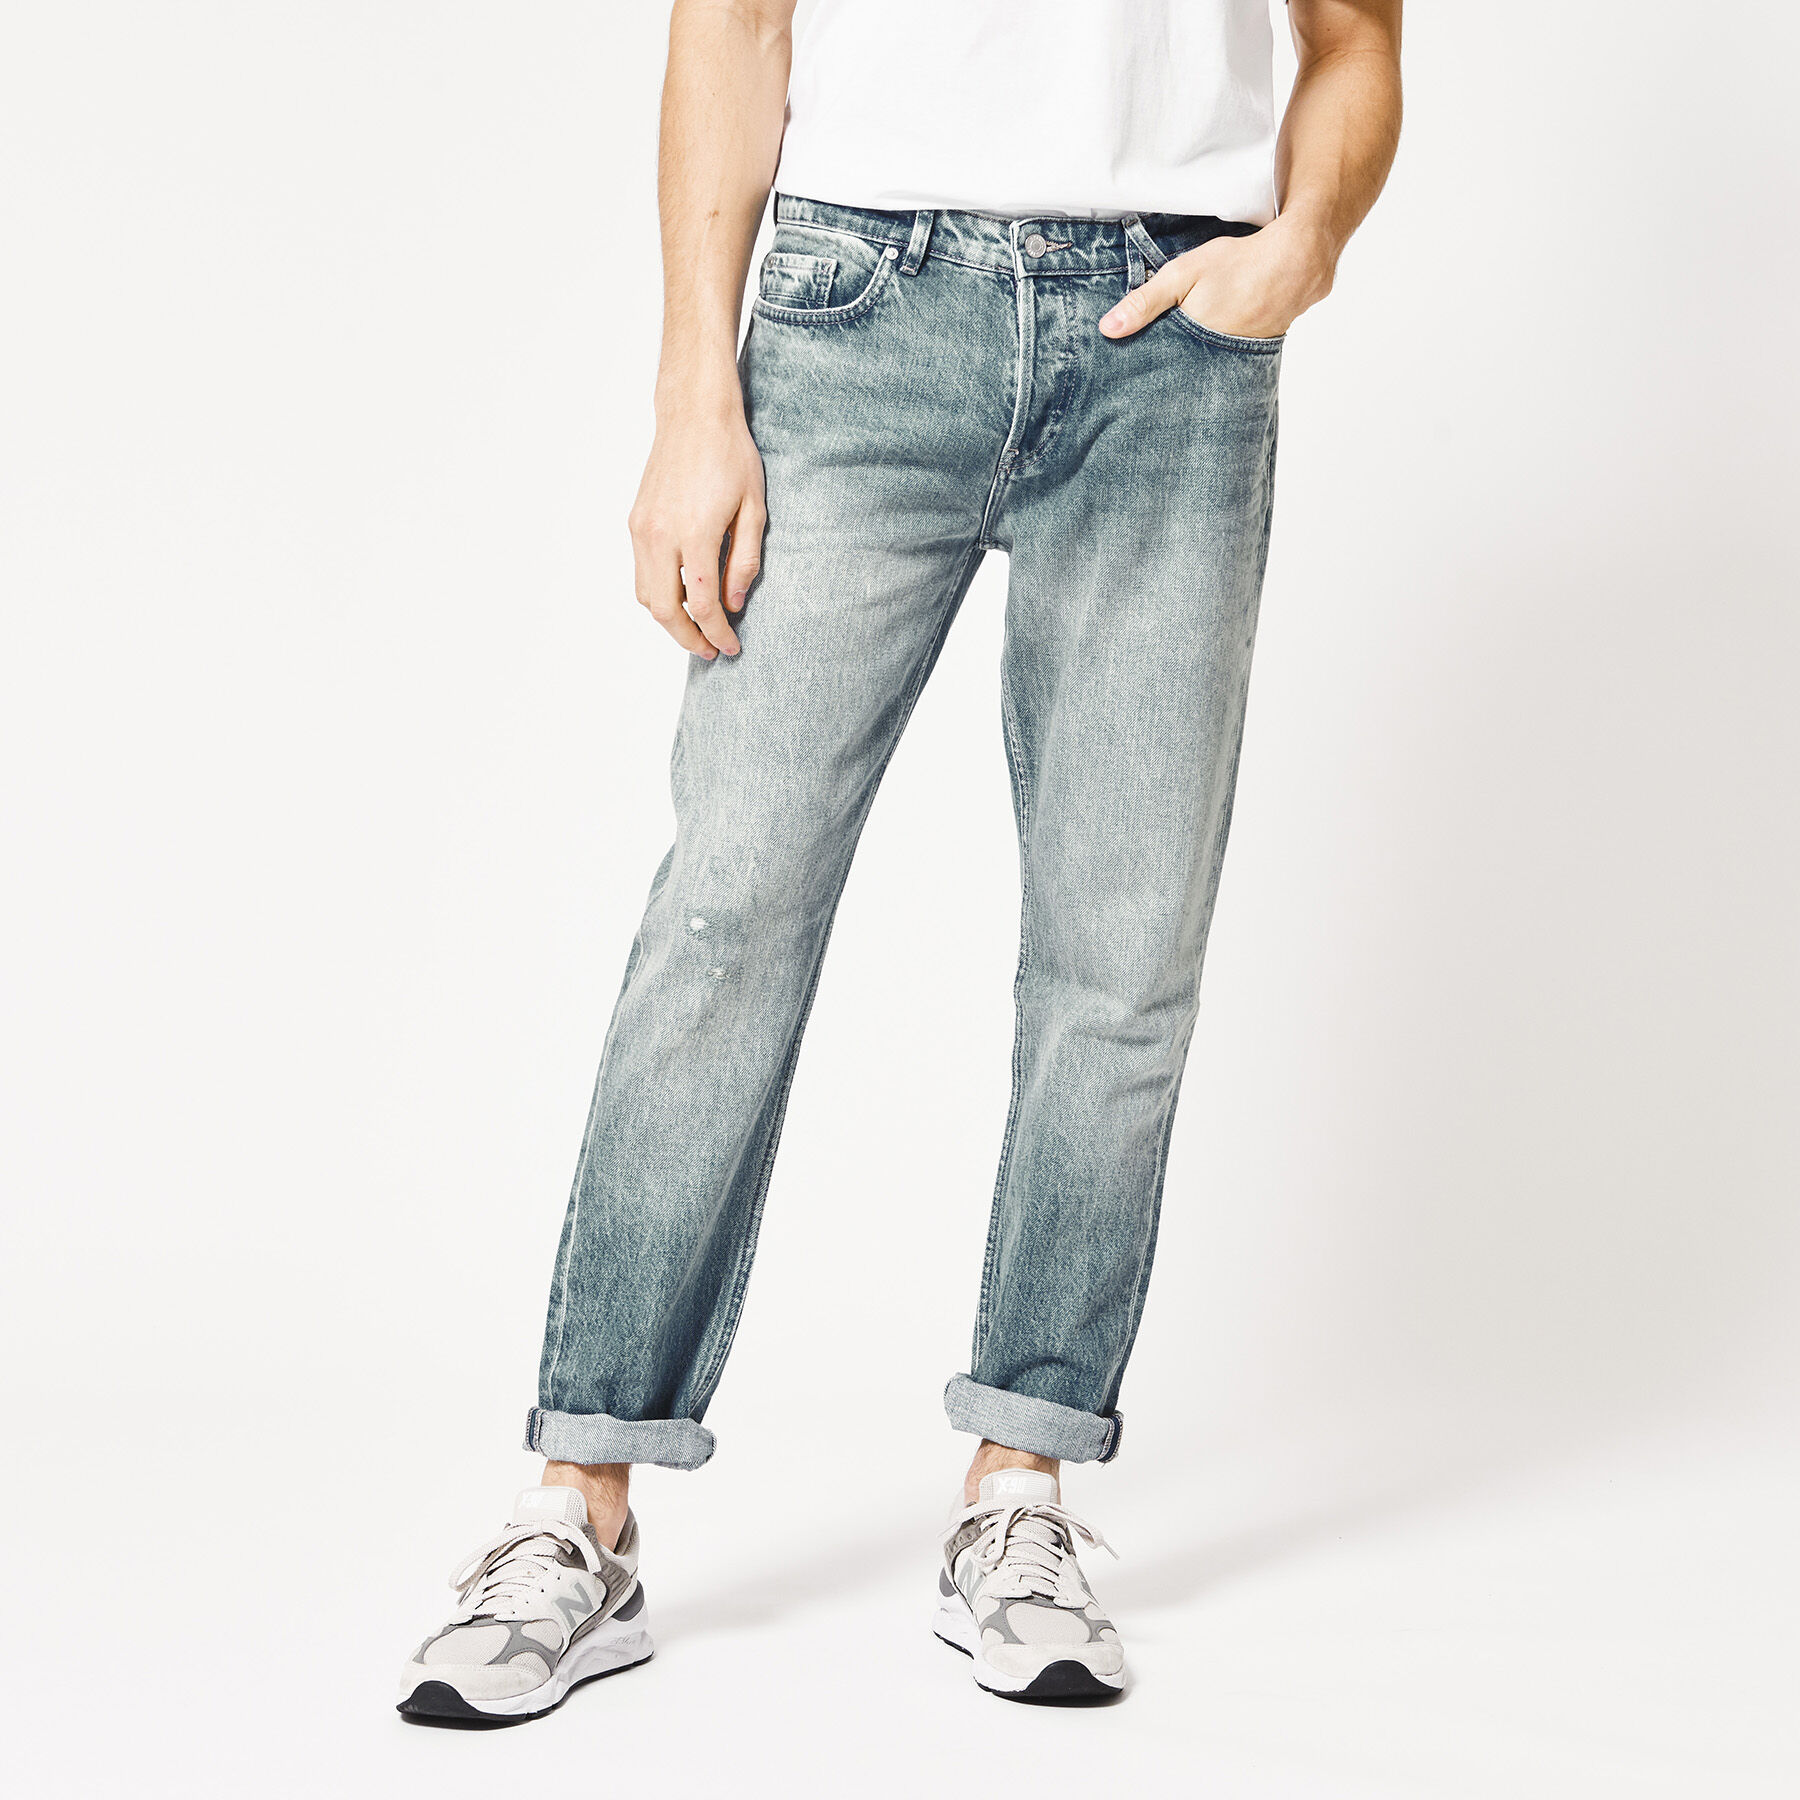 slim fit jeans for mens online